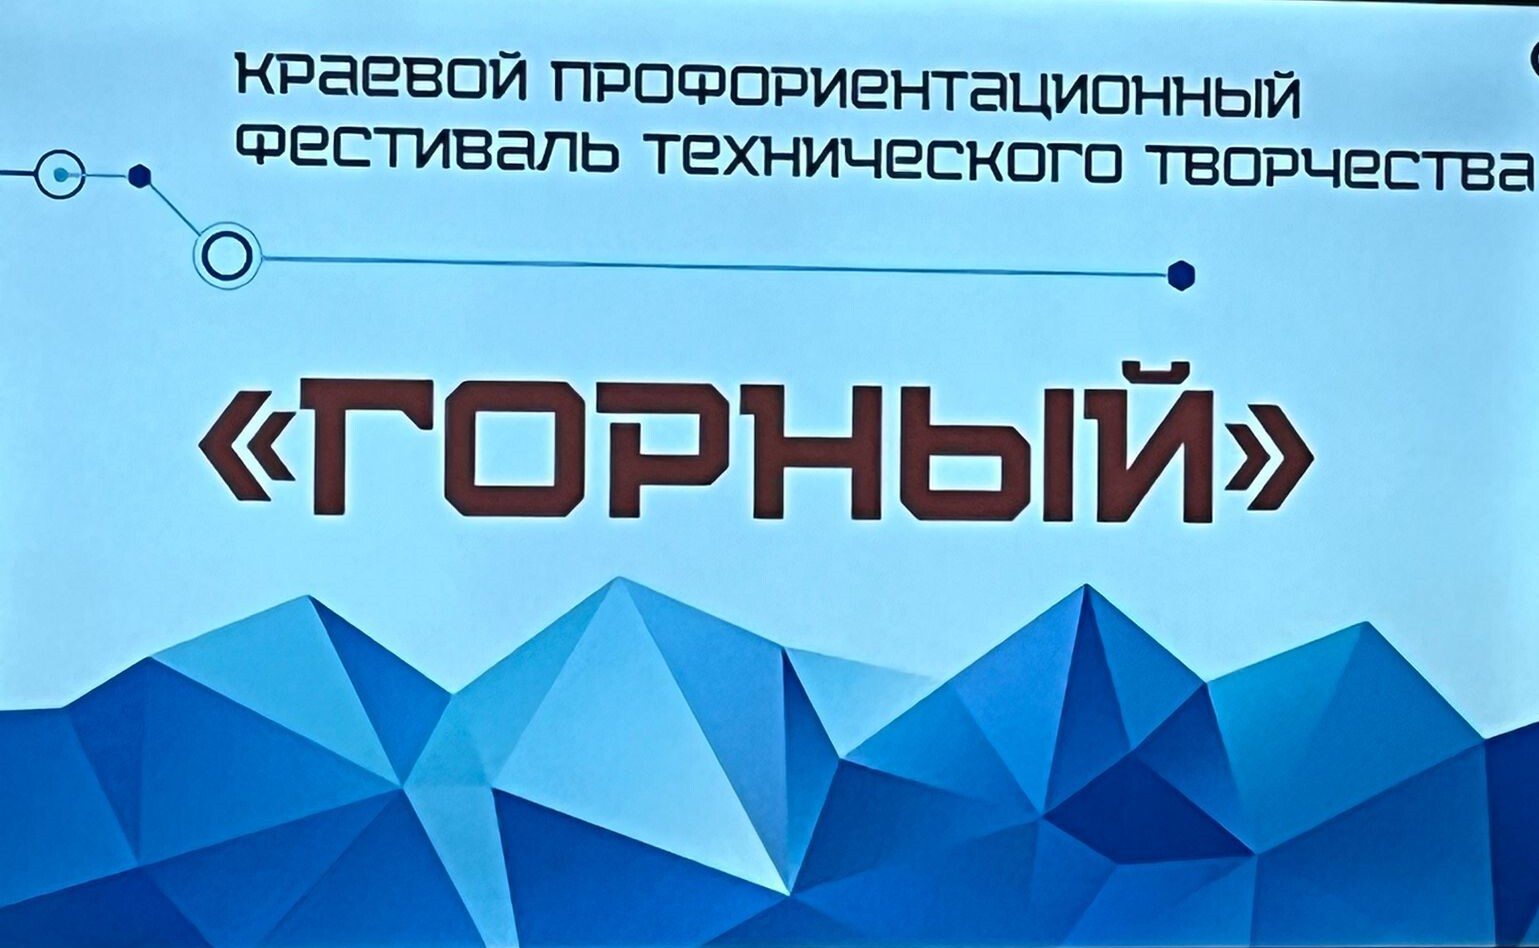 Краевой профориентационный фестиваль технического творчества 